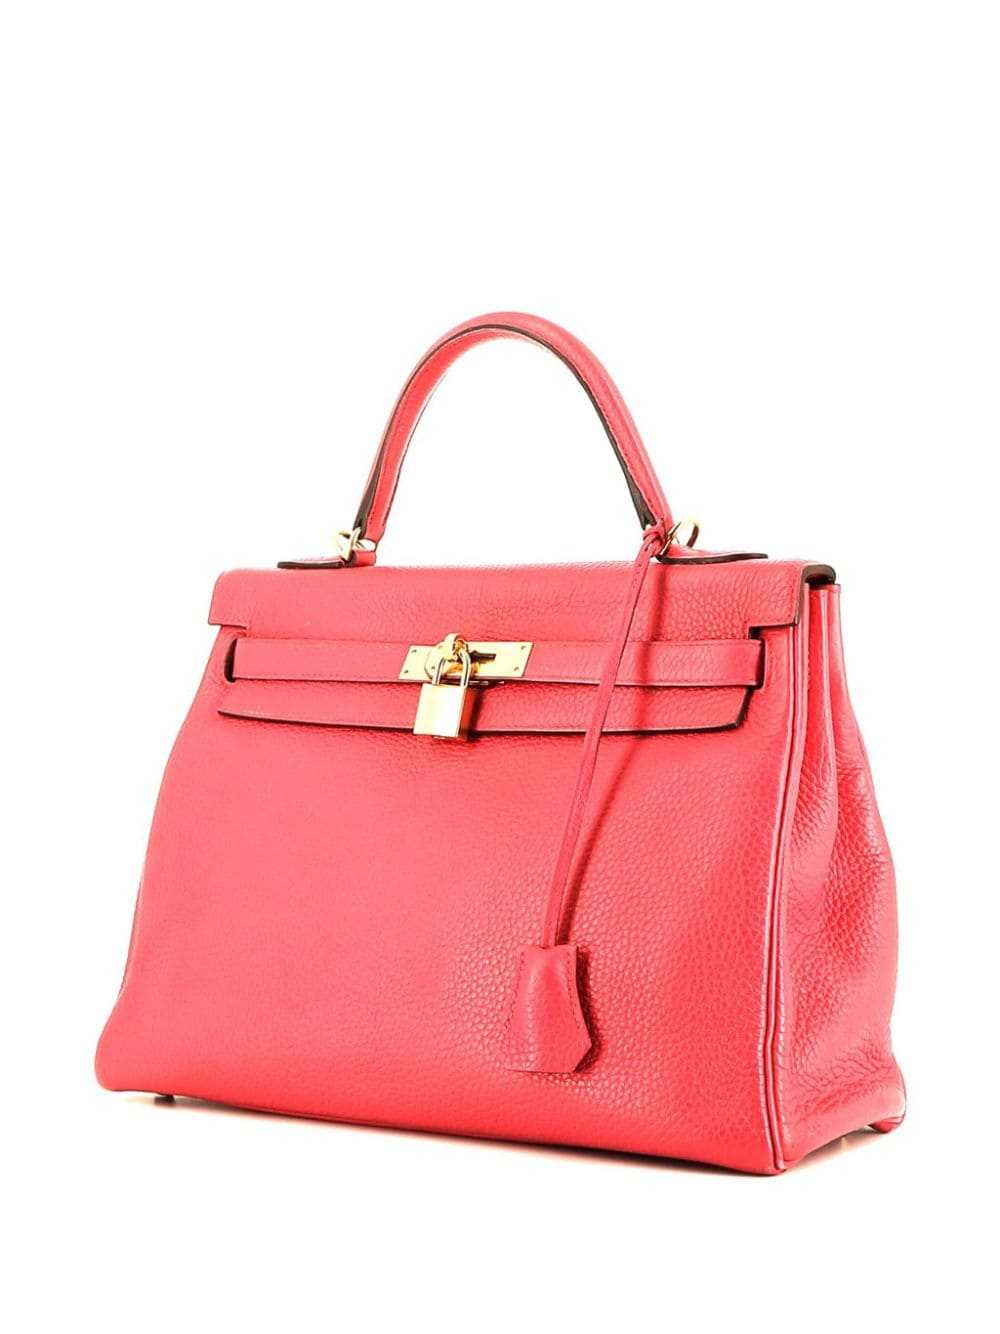 Hermès Pre-Owned Kelly 32 Retourne handbag - Pink - image 4